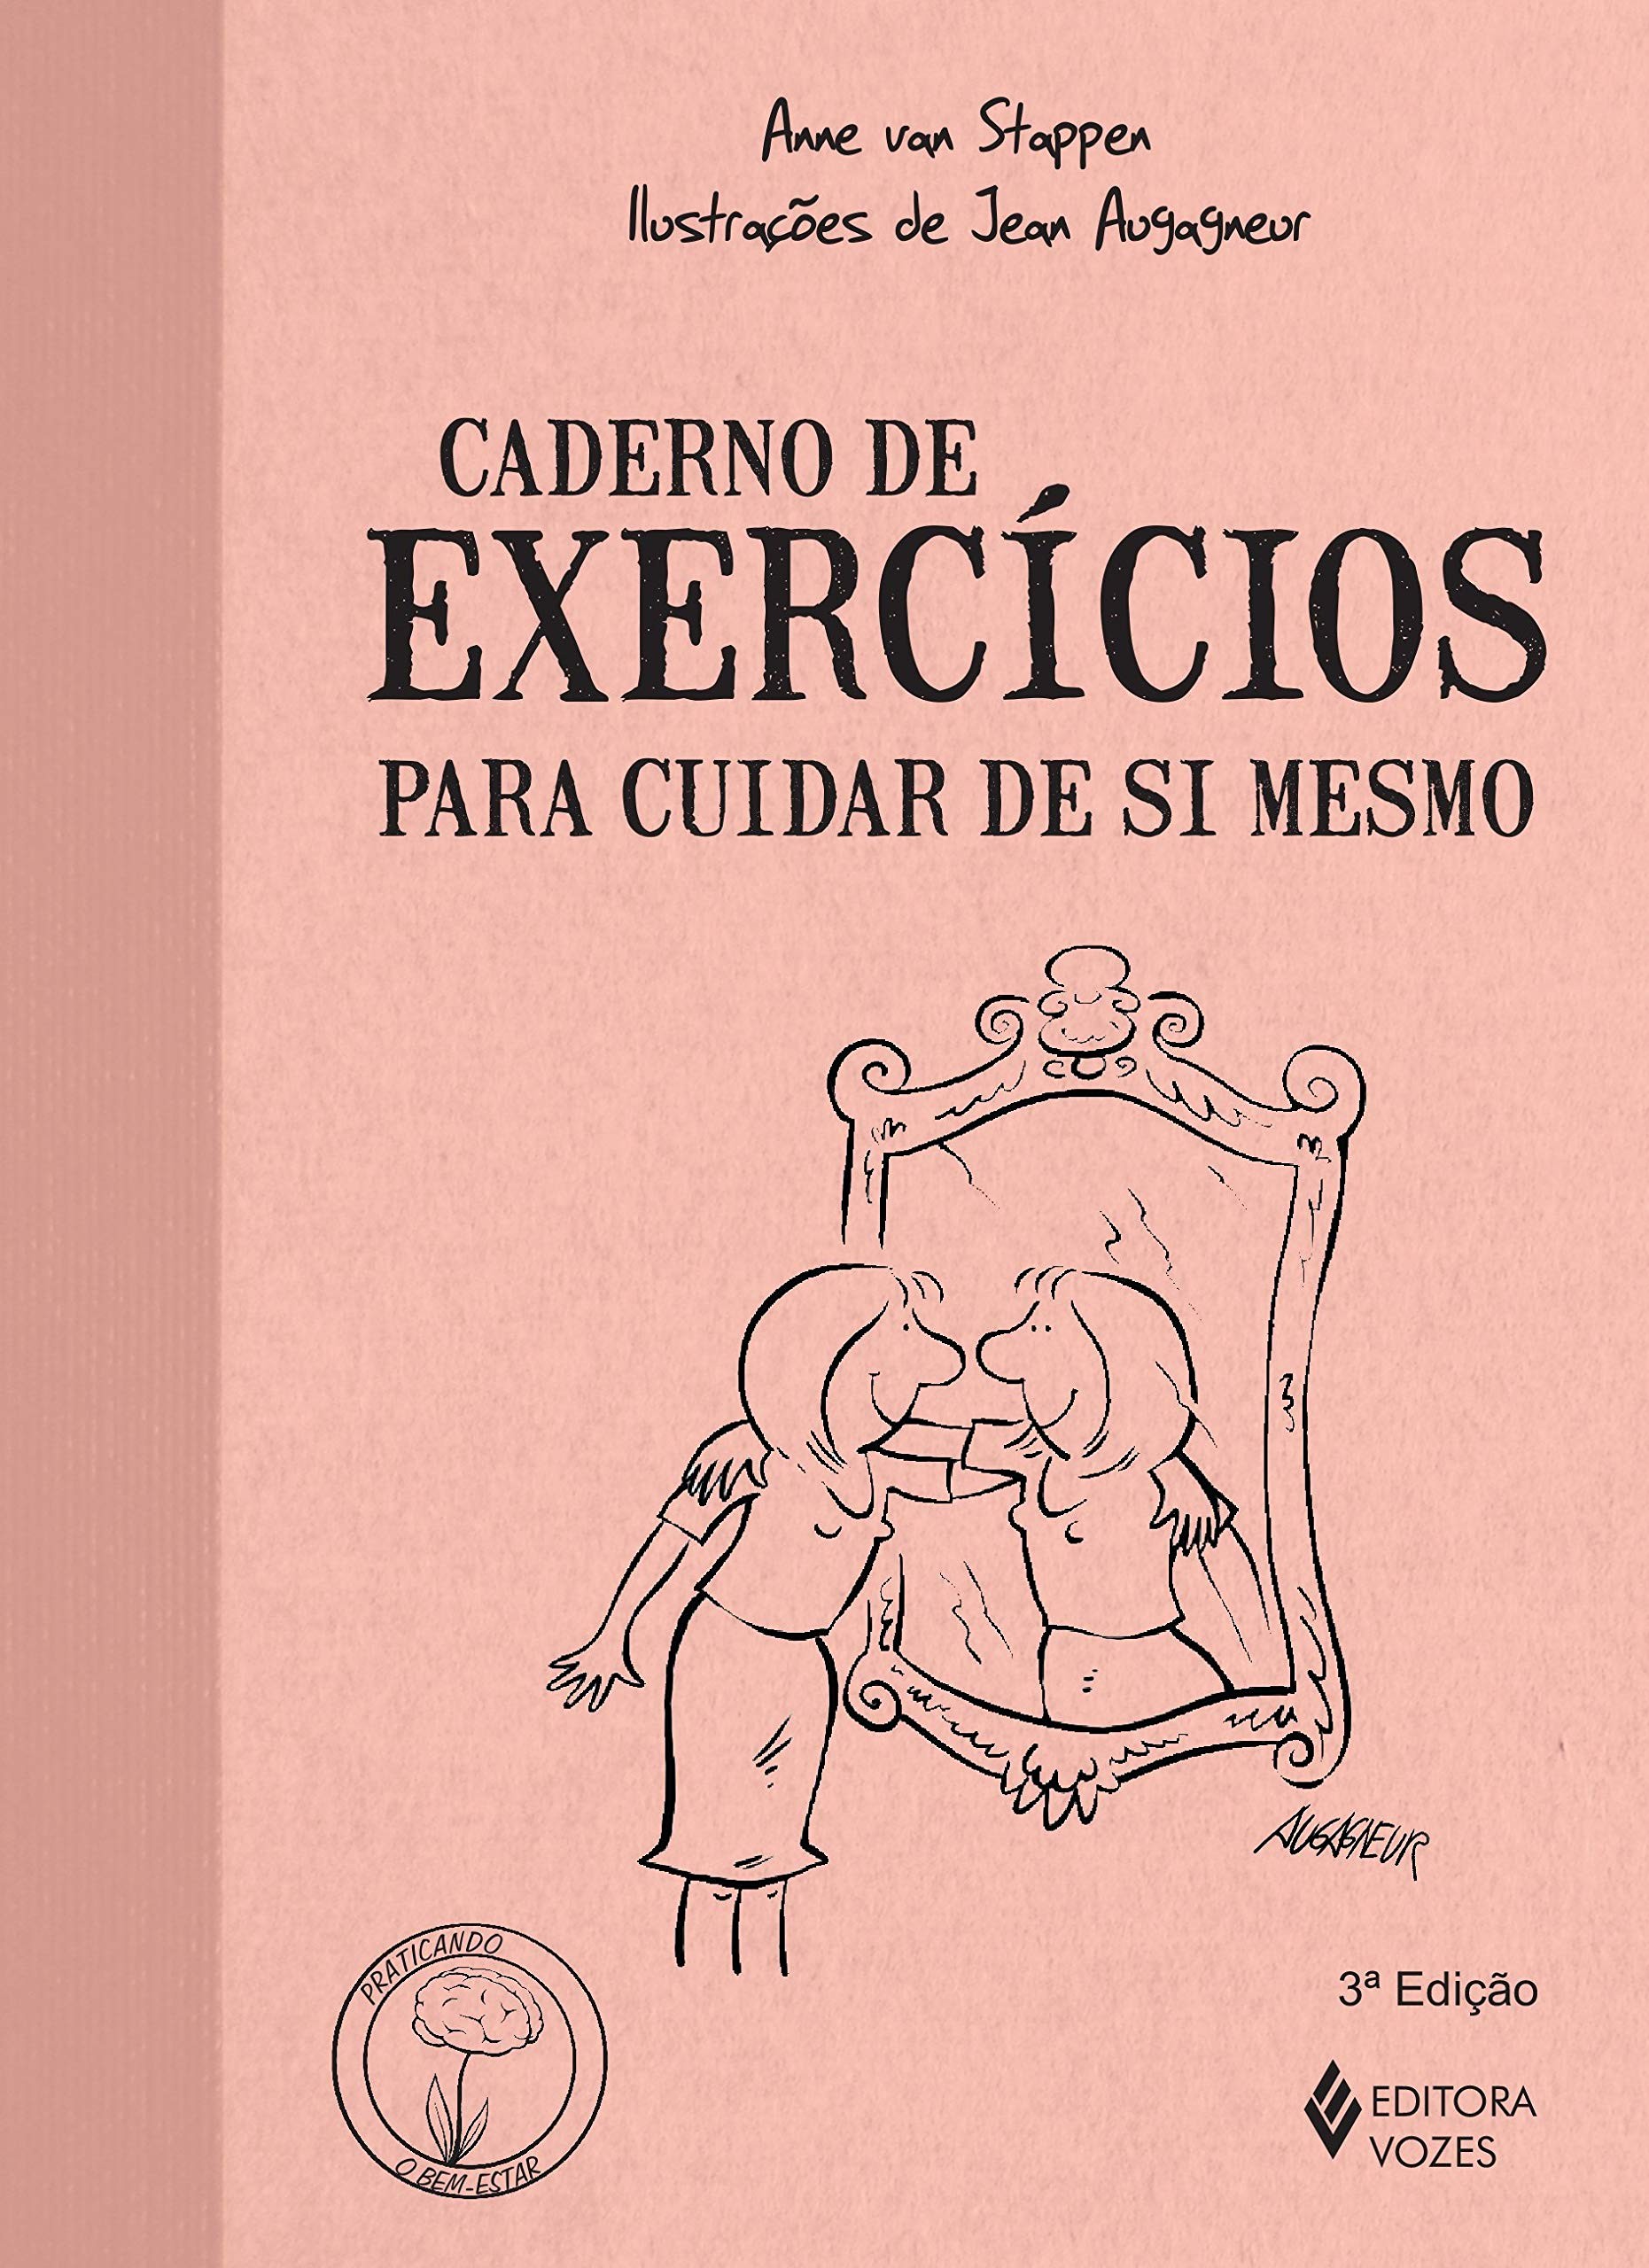 Caderno de exercícios para cuidar de si mesmo (Foto: Reprodução)